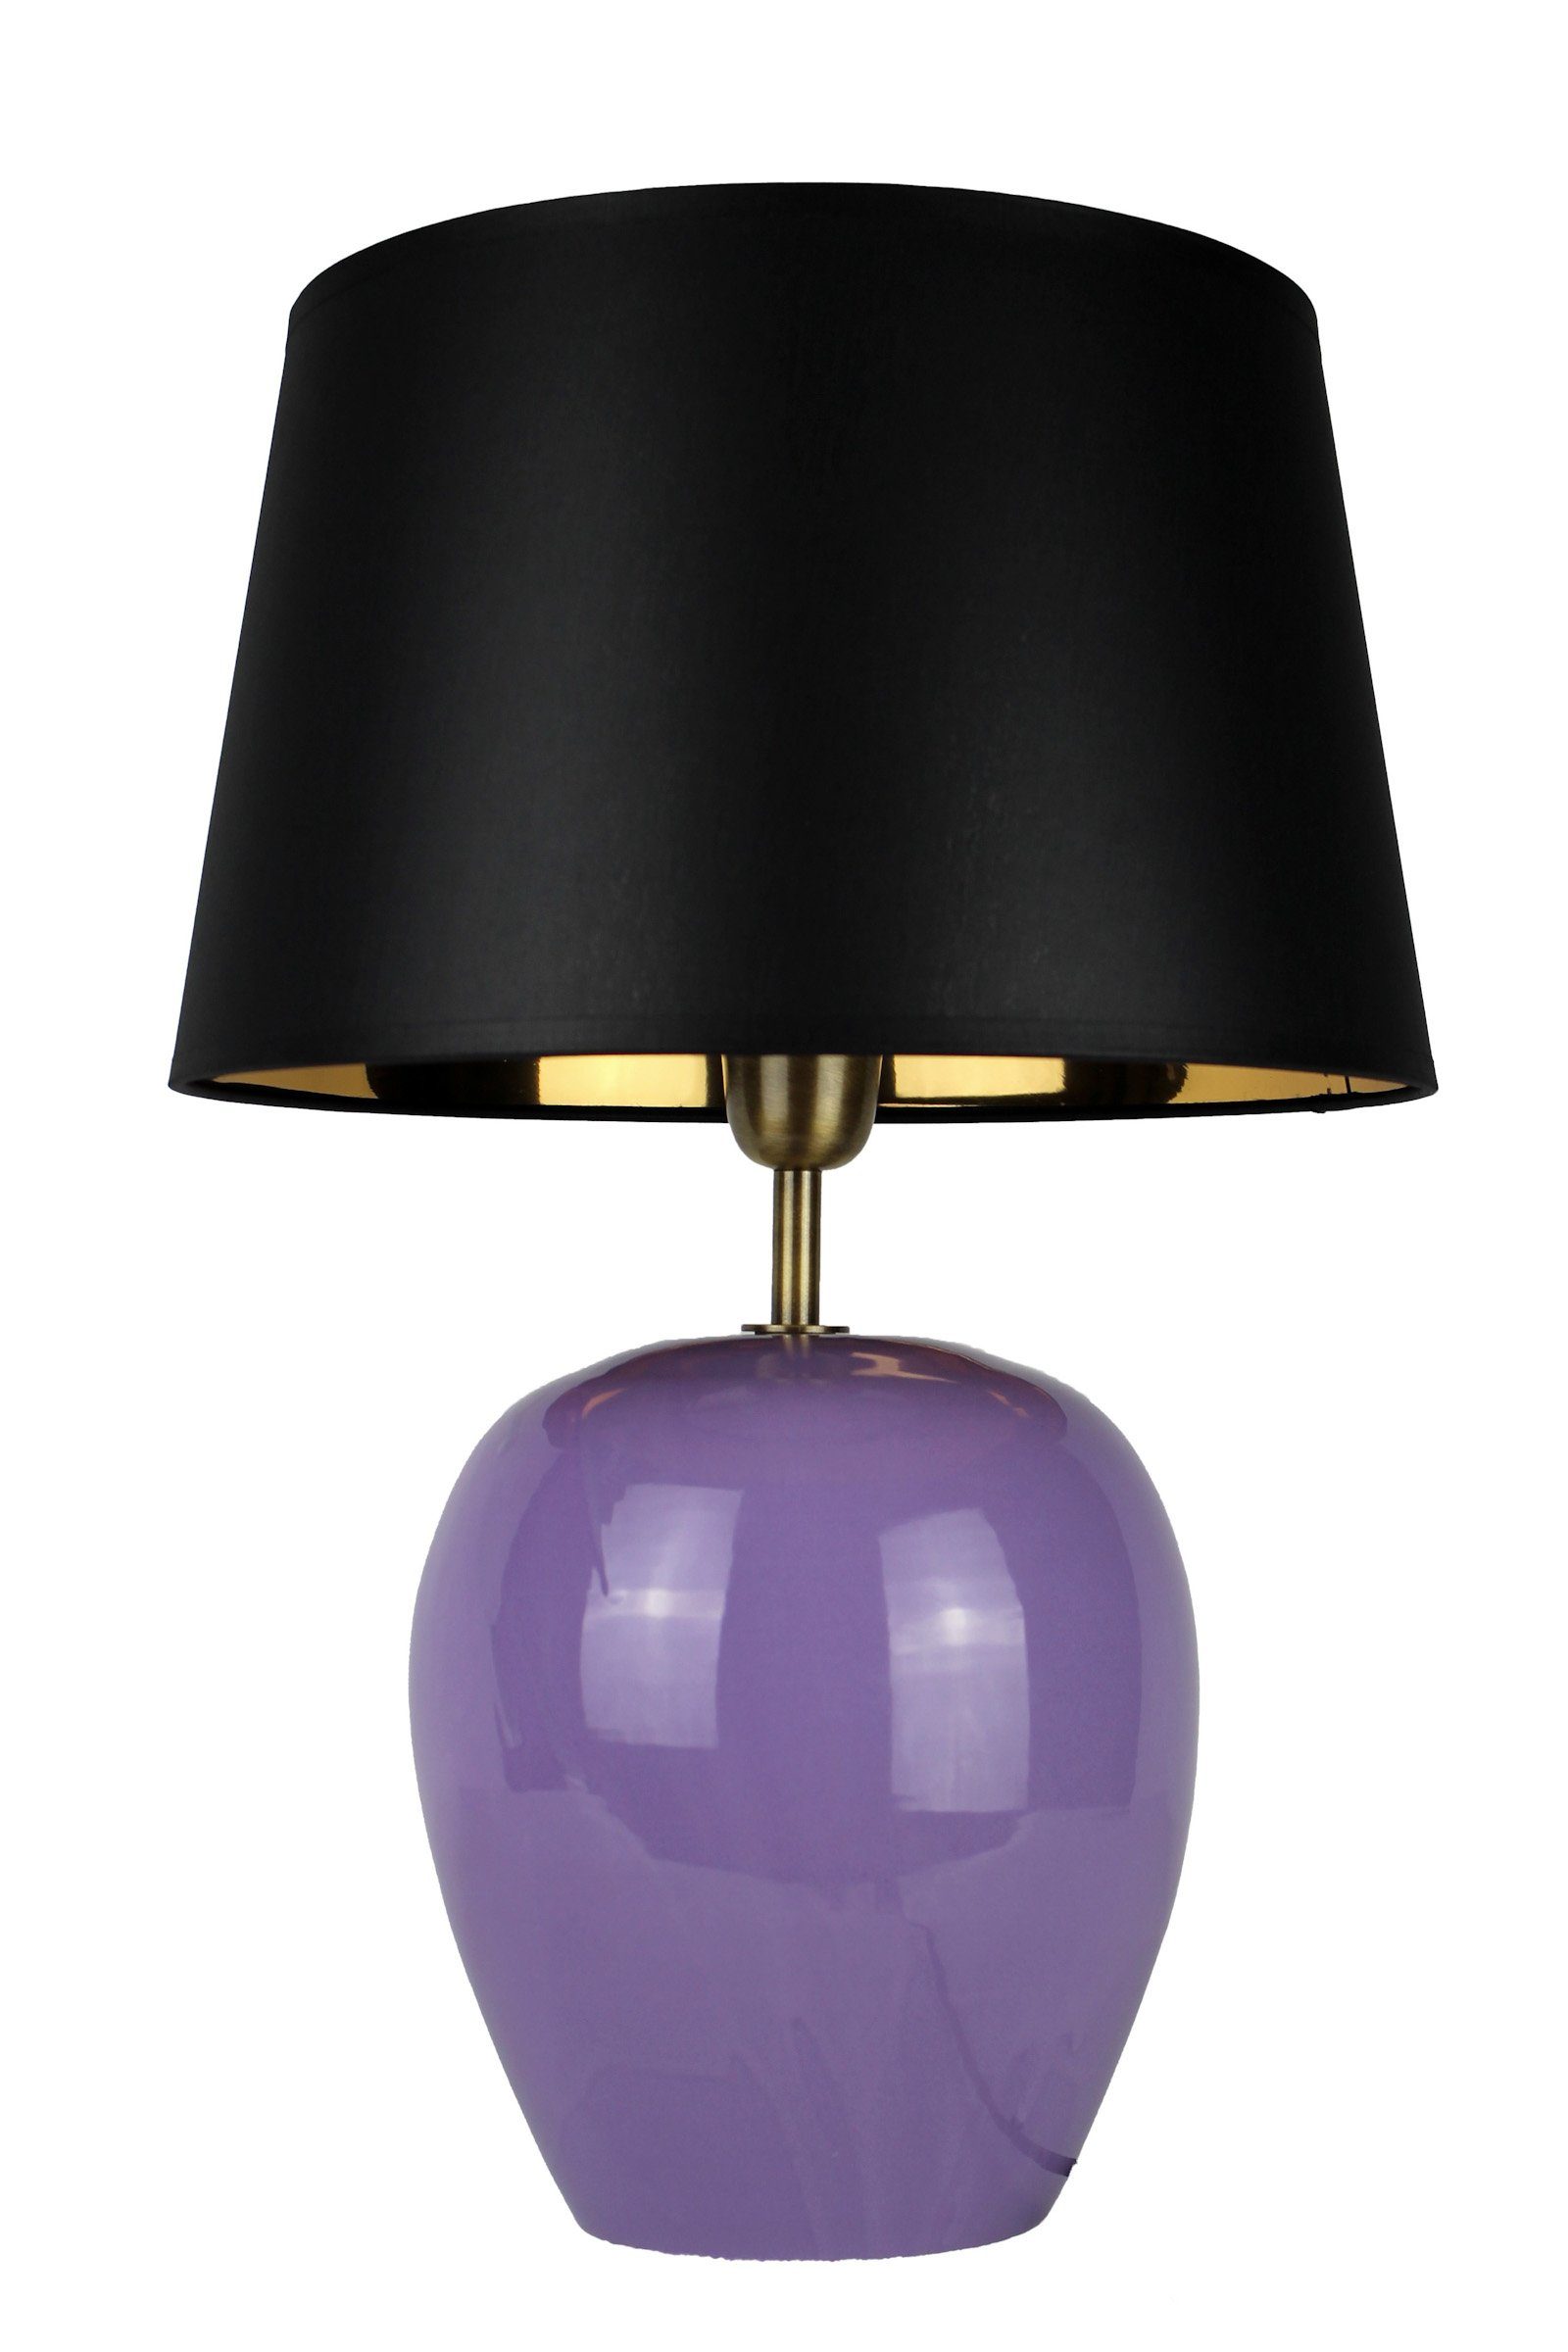 Signature Home Collection Nachttischlampe Tischleuchte aus Keramik 35 cm mit Stoffschirm, ohne Leuchtmittel, warmweiß, handgefertigte Keramiklampe lila